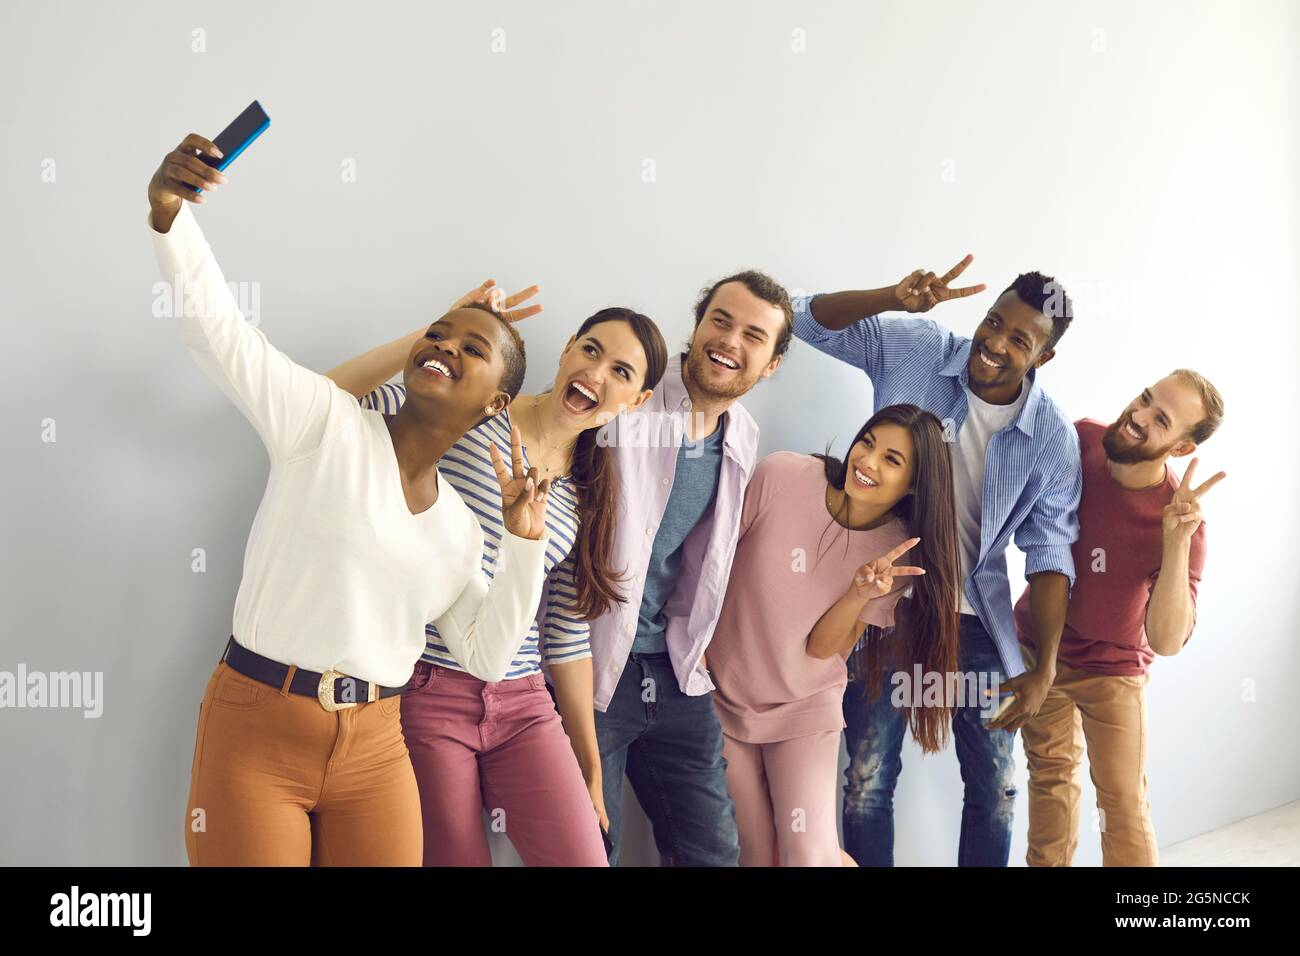 Gruppe lächelnder multinationaler Studenten oder Freunde, die V-Zeichen-Gesten zeigen und Selfie machen. Stockfoto